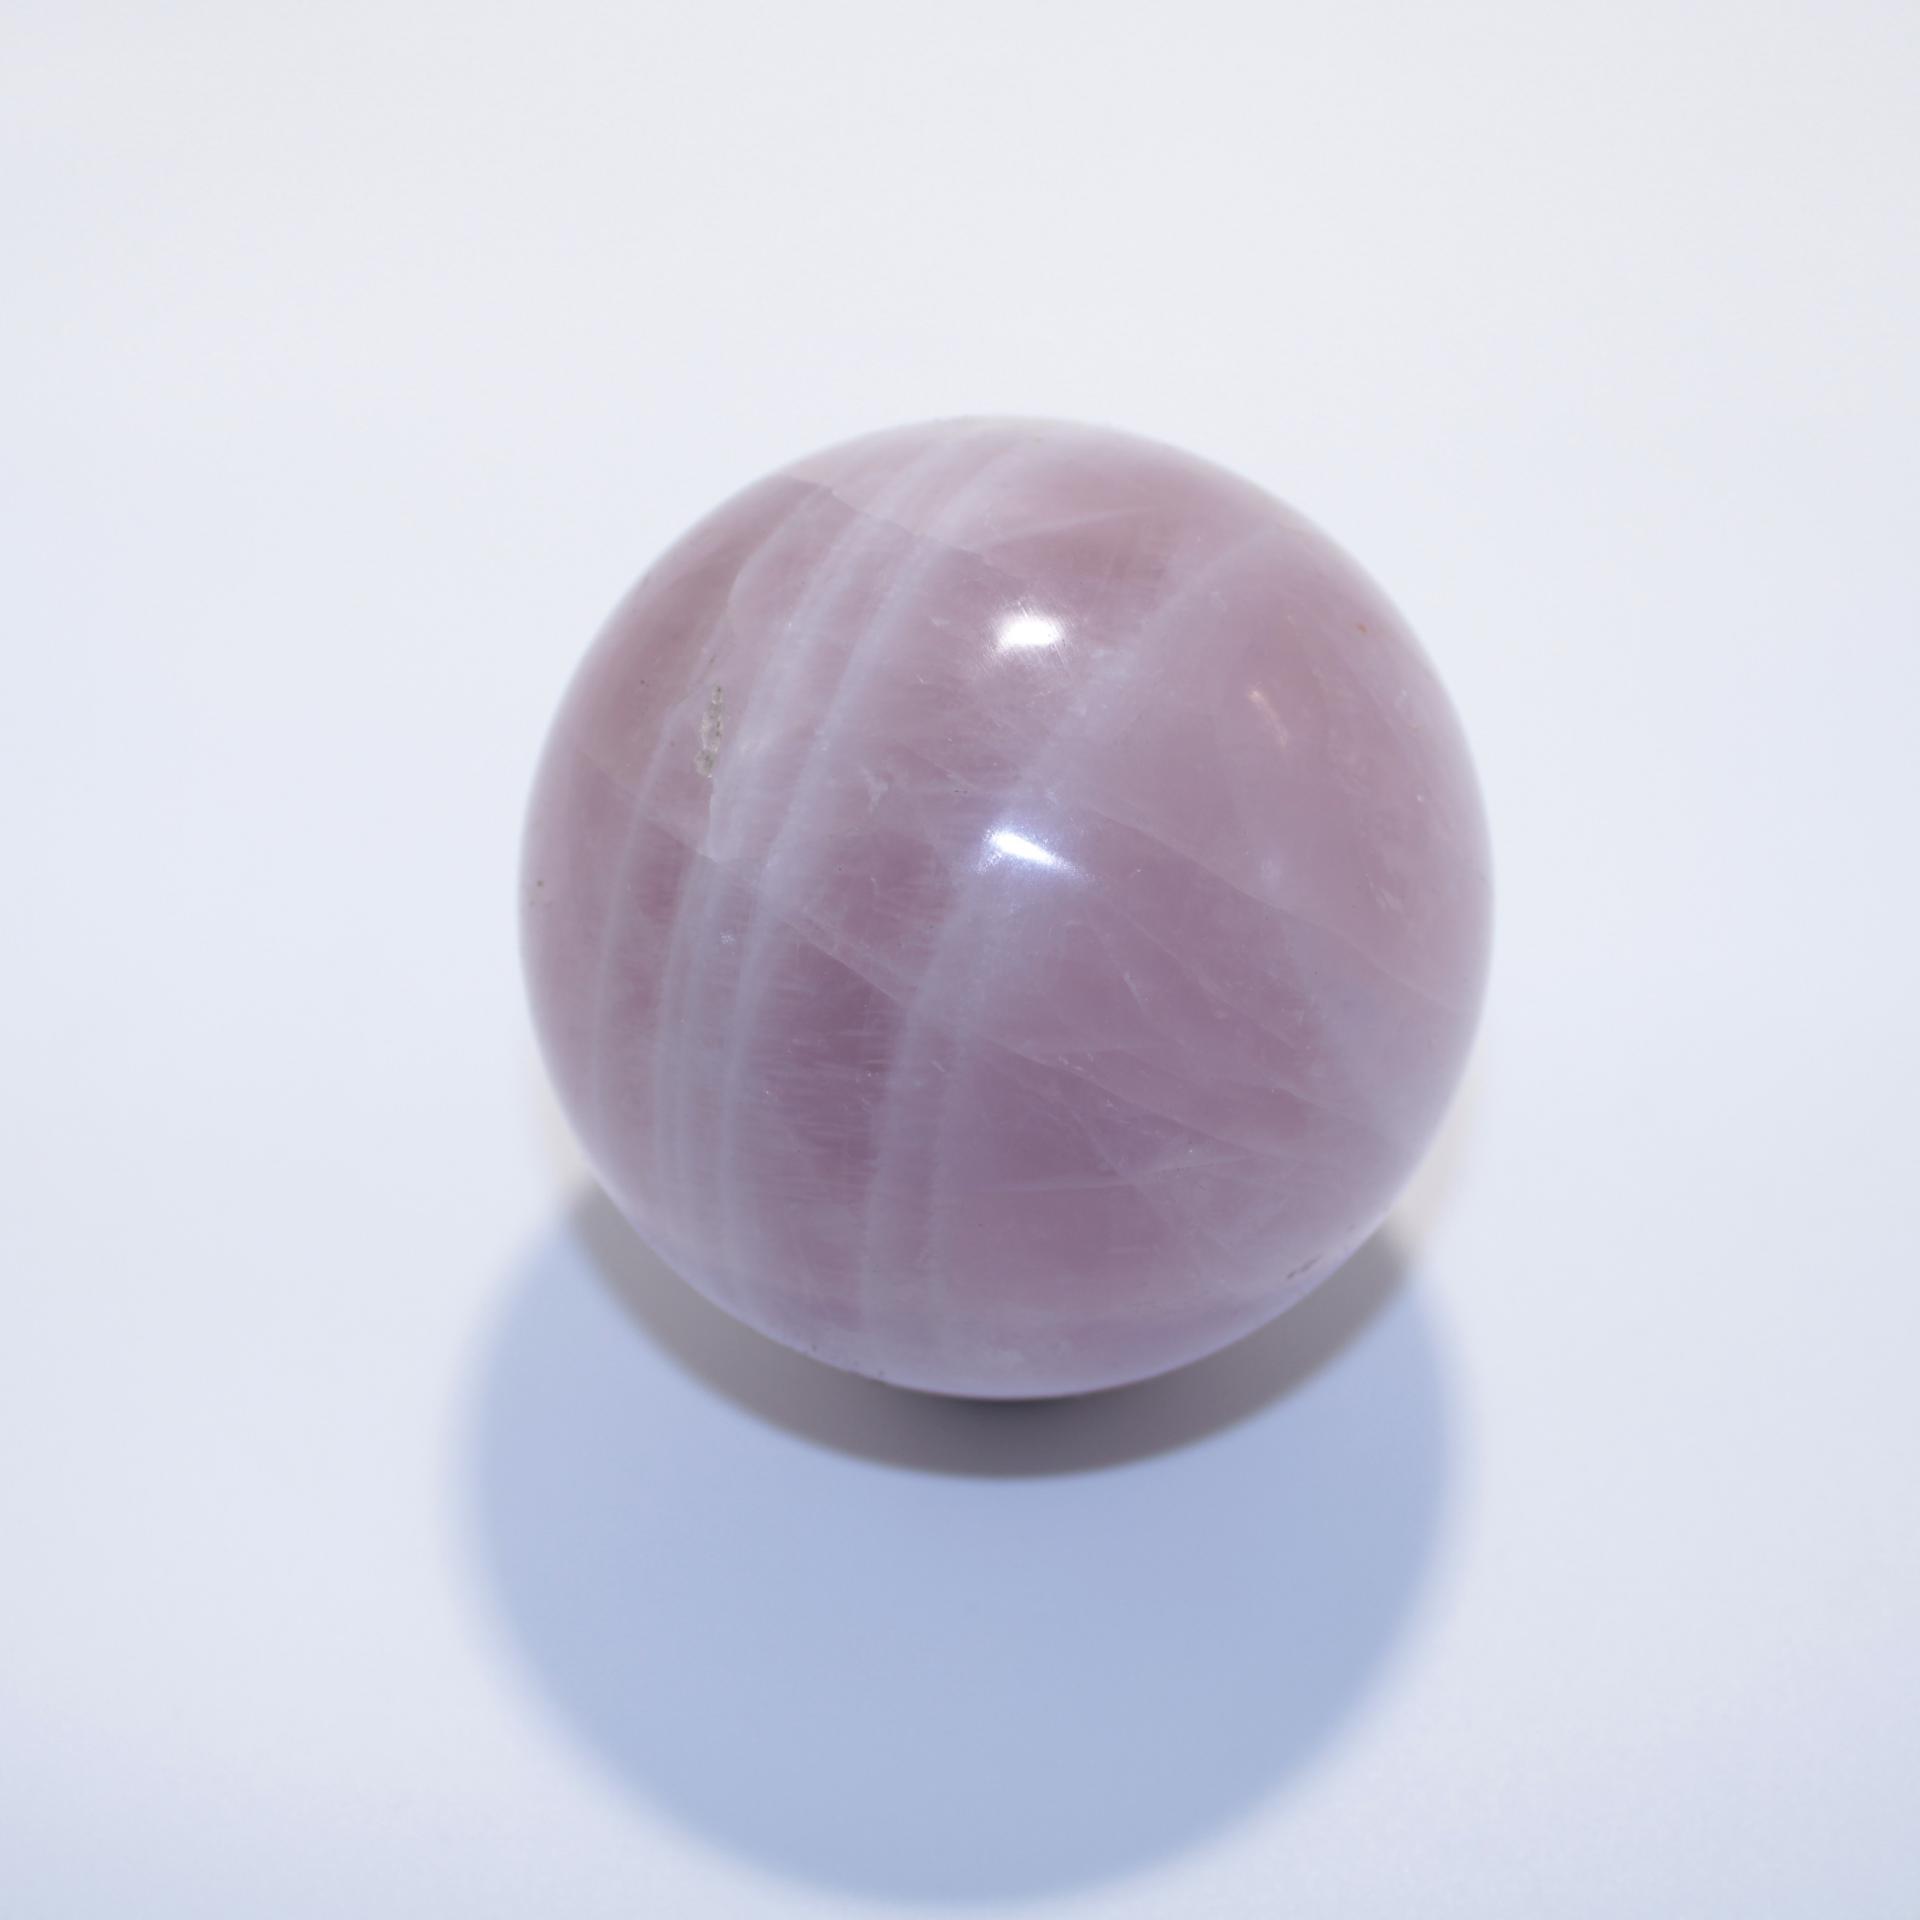 J13 sphere quartz rose 5 